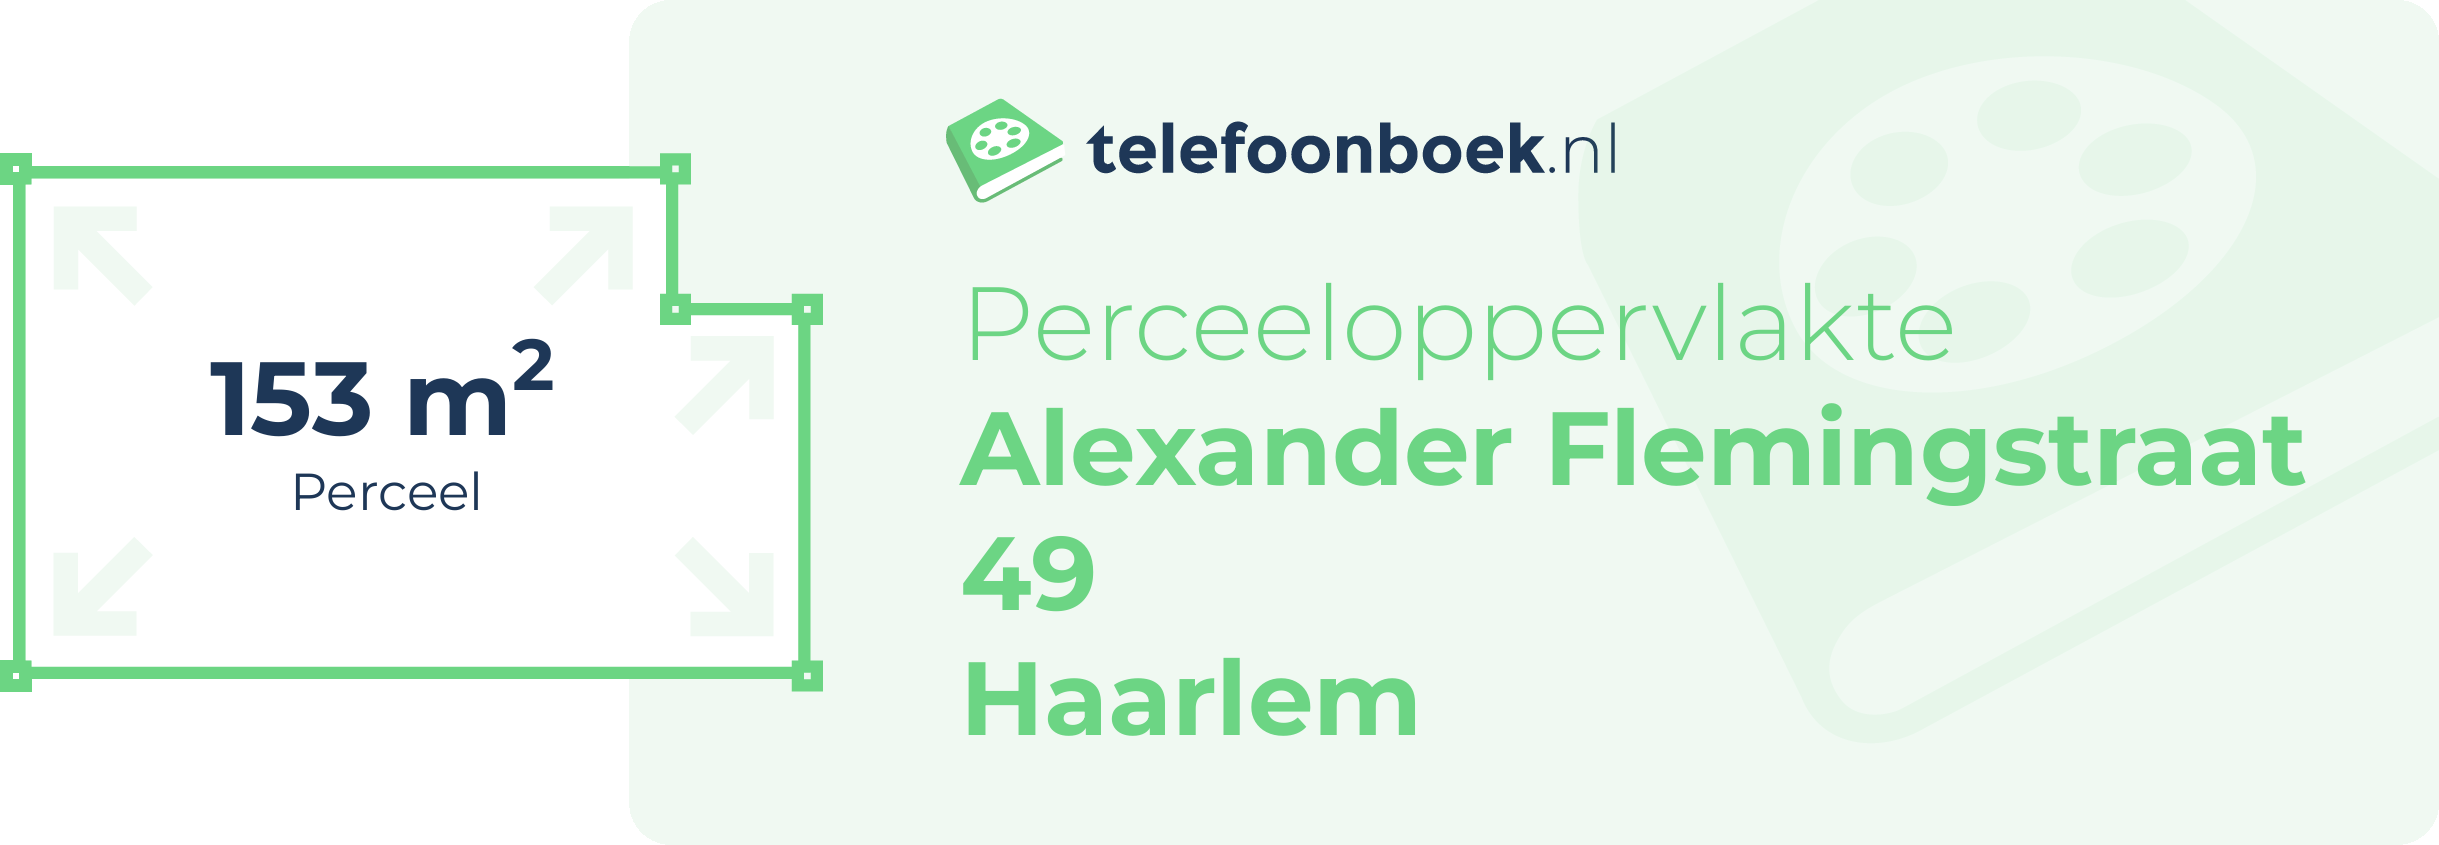 Perceeloppervlakte Alexander Flemingstraat 49 Haarlem